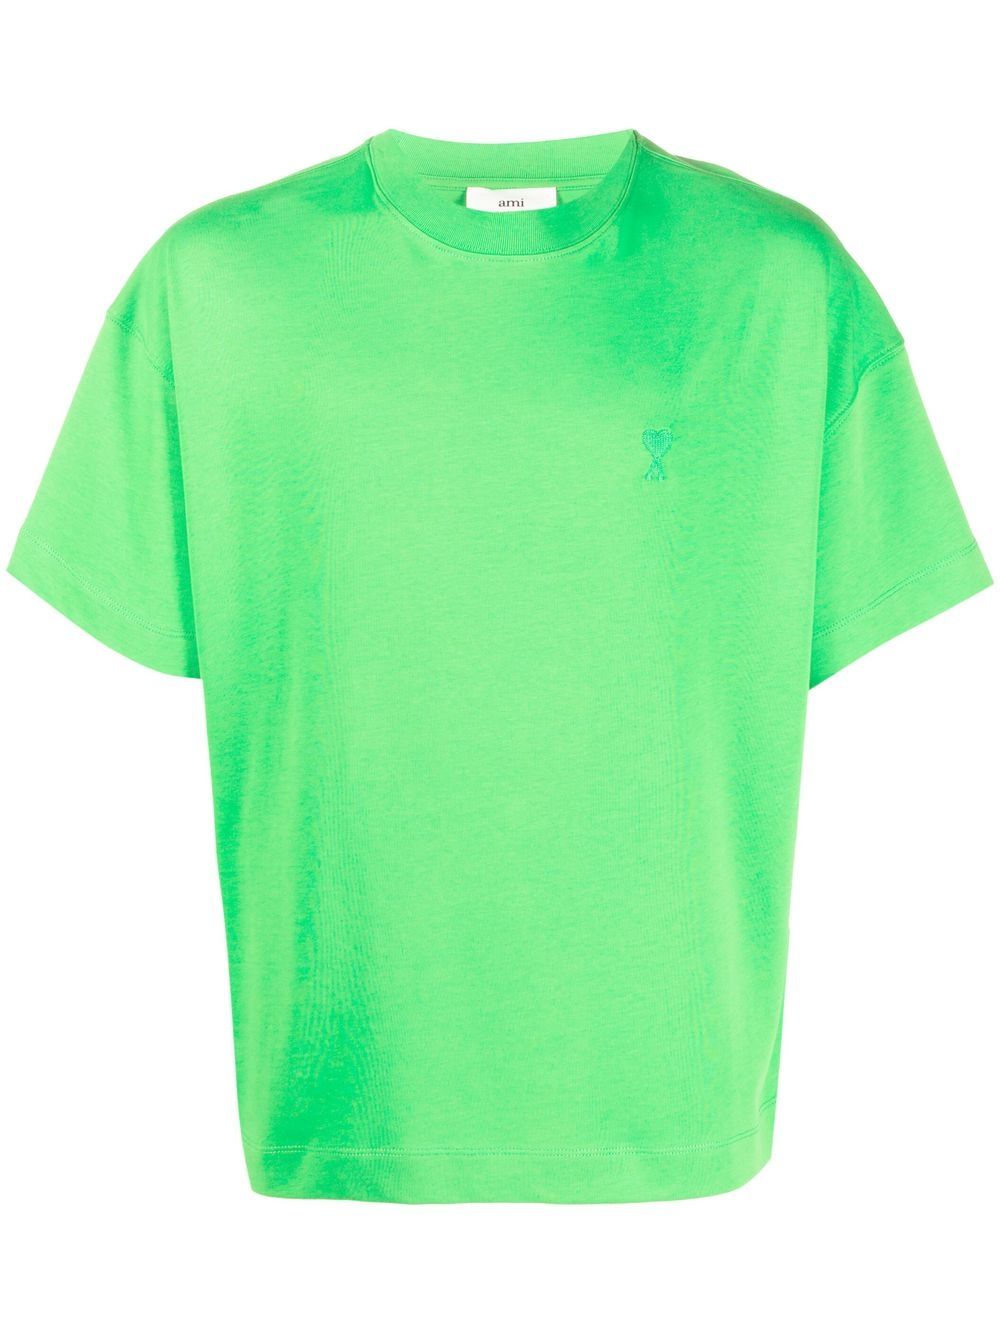 Ami Paris - T-shirt coton bio vert - Lothaire boutiques